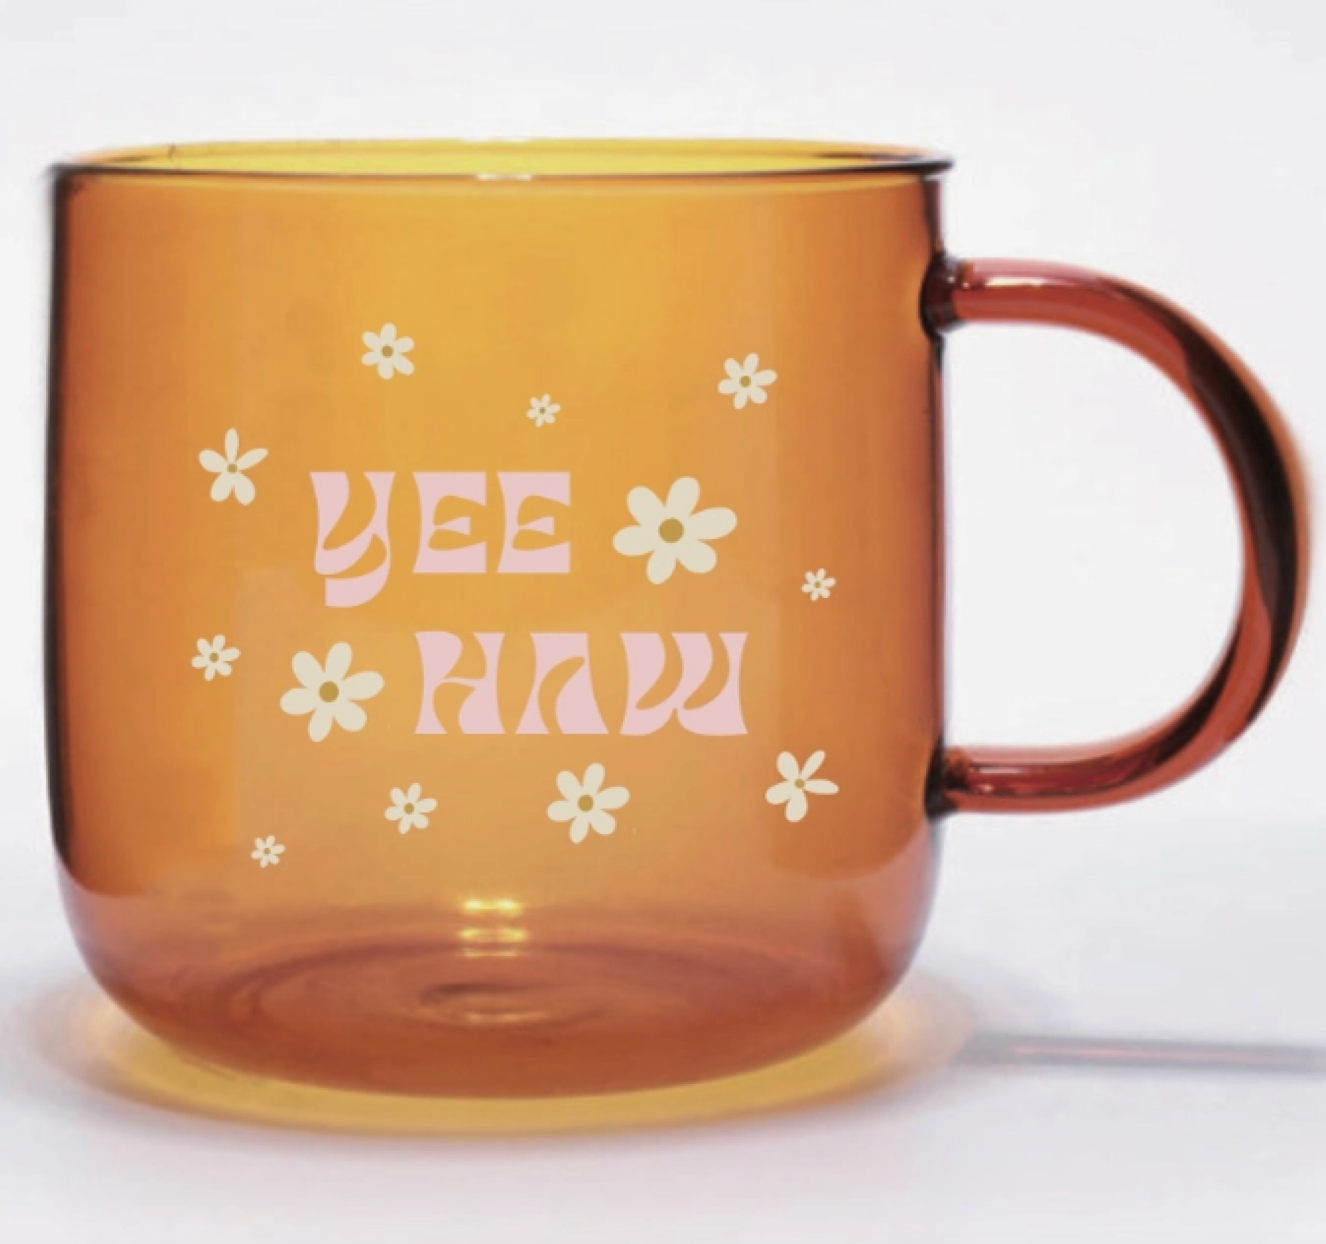 Yee Haw Glass Mug